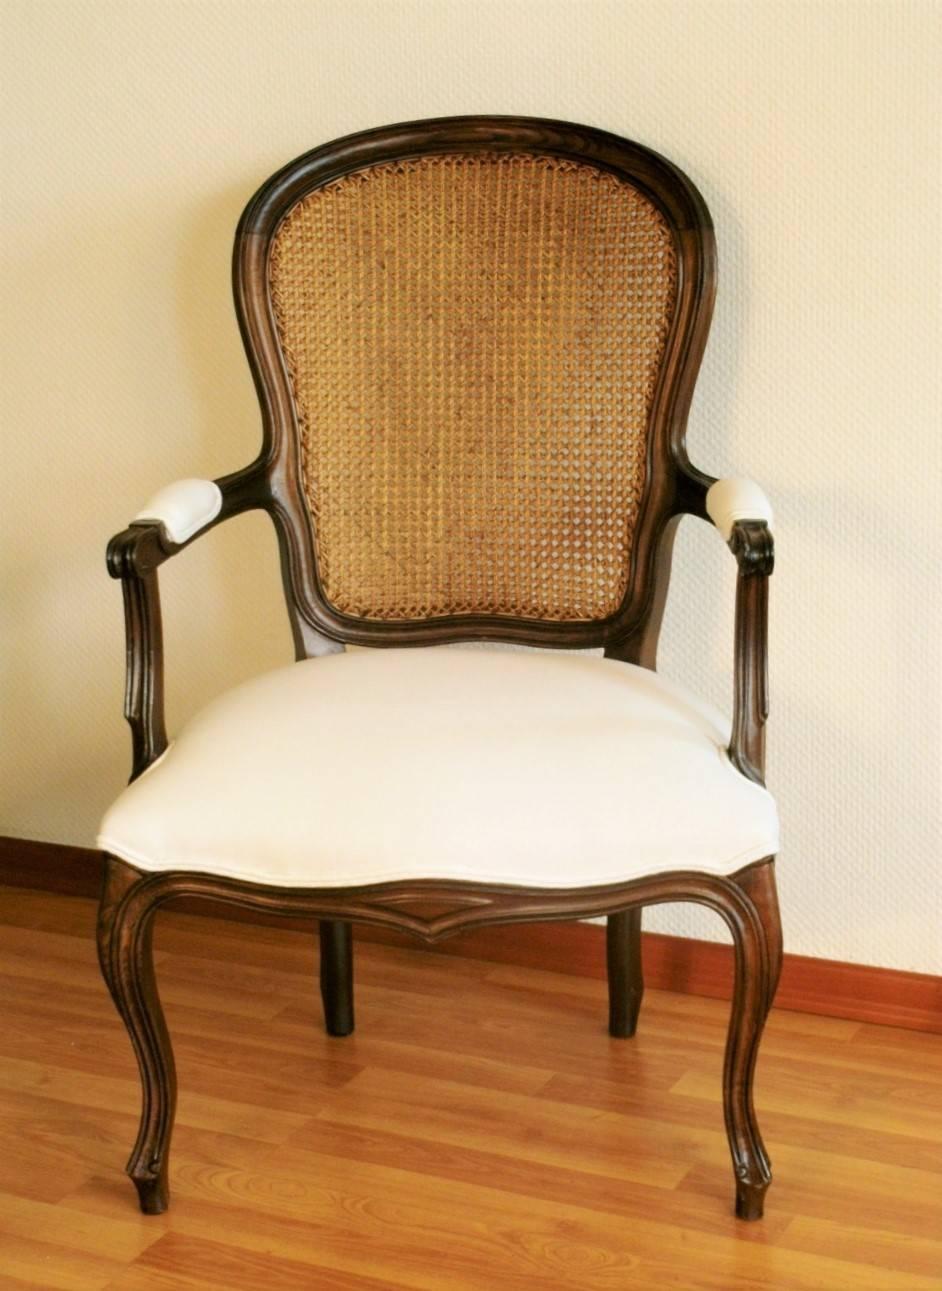 Cabrio-Sessel im Louis-XVI-Stil aus massivem Nussbaumholz, fein geschnitzt, mit geschnitzter Rückenlehne, Frankreich, 1900-1910. Der Stuhl wurde neu gepolstert in cremefarbenem 100% Leinen, die ursprüngliche Oberfläche ist sehr gut